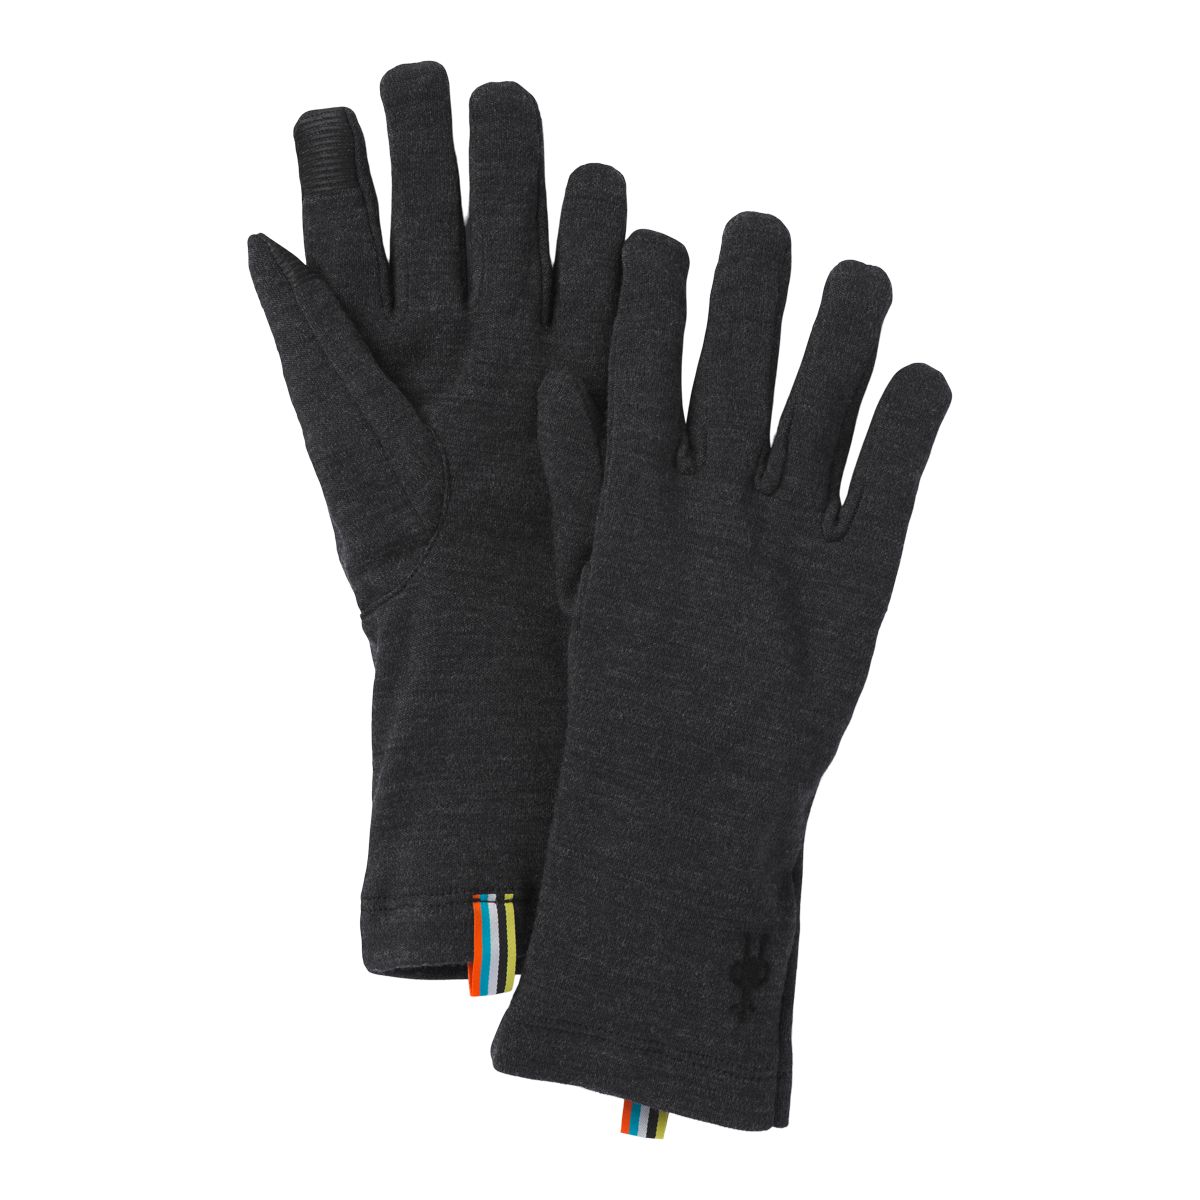 Smartwool Men's Merino 250 Gloves